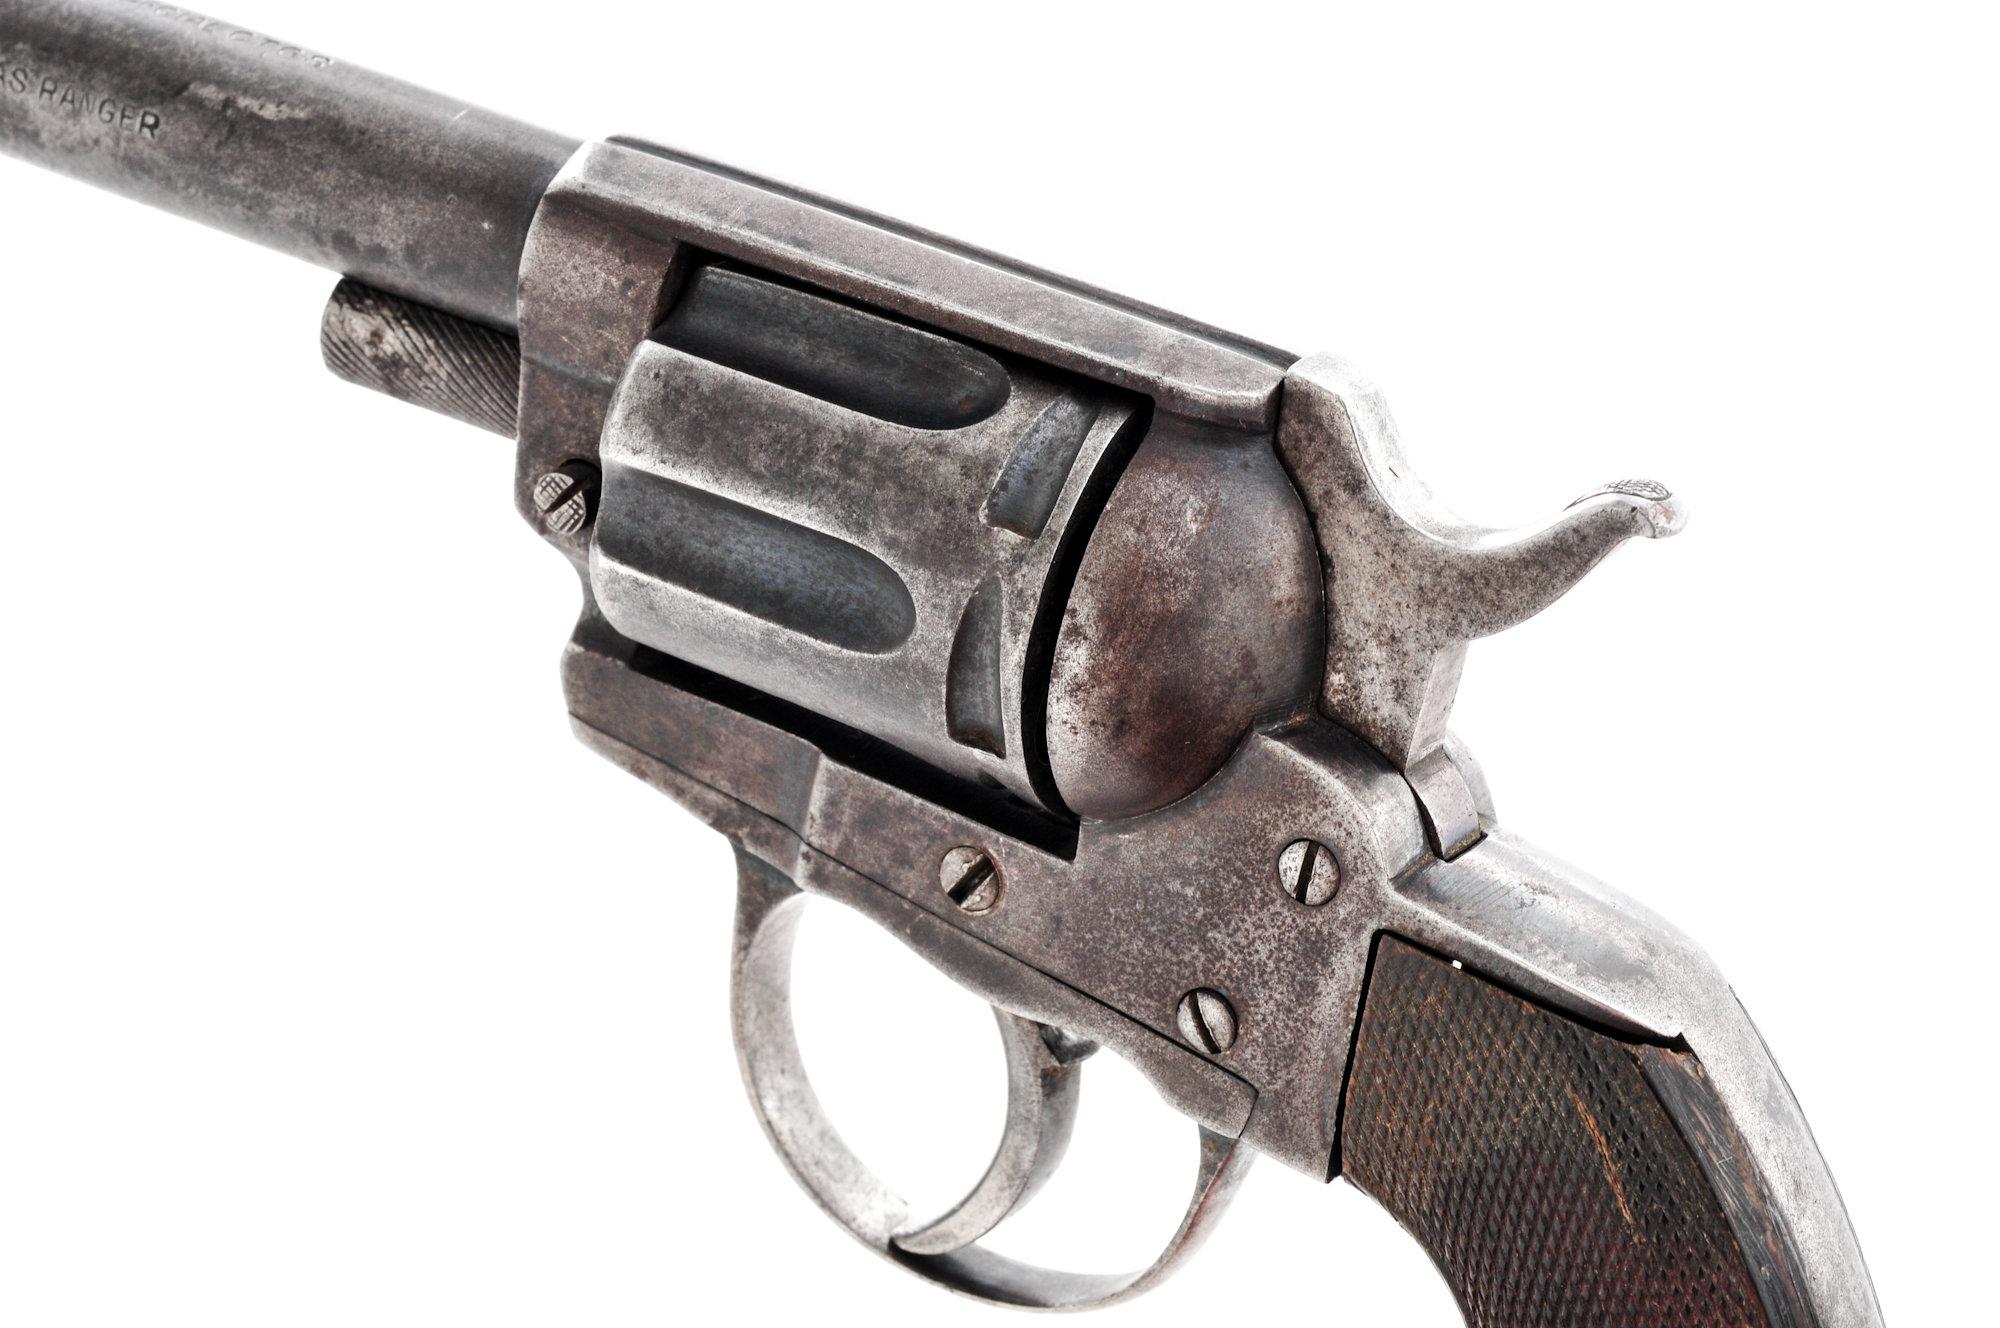 Belgian Texas Ranger Double Action Revolver